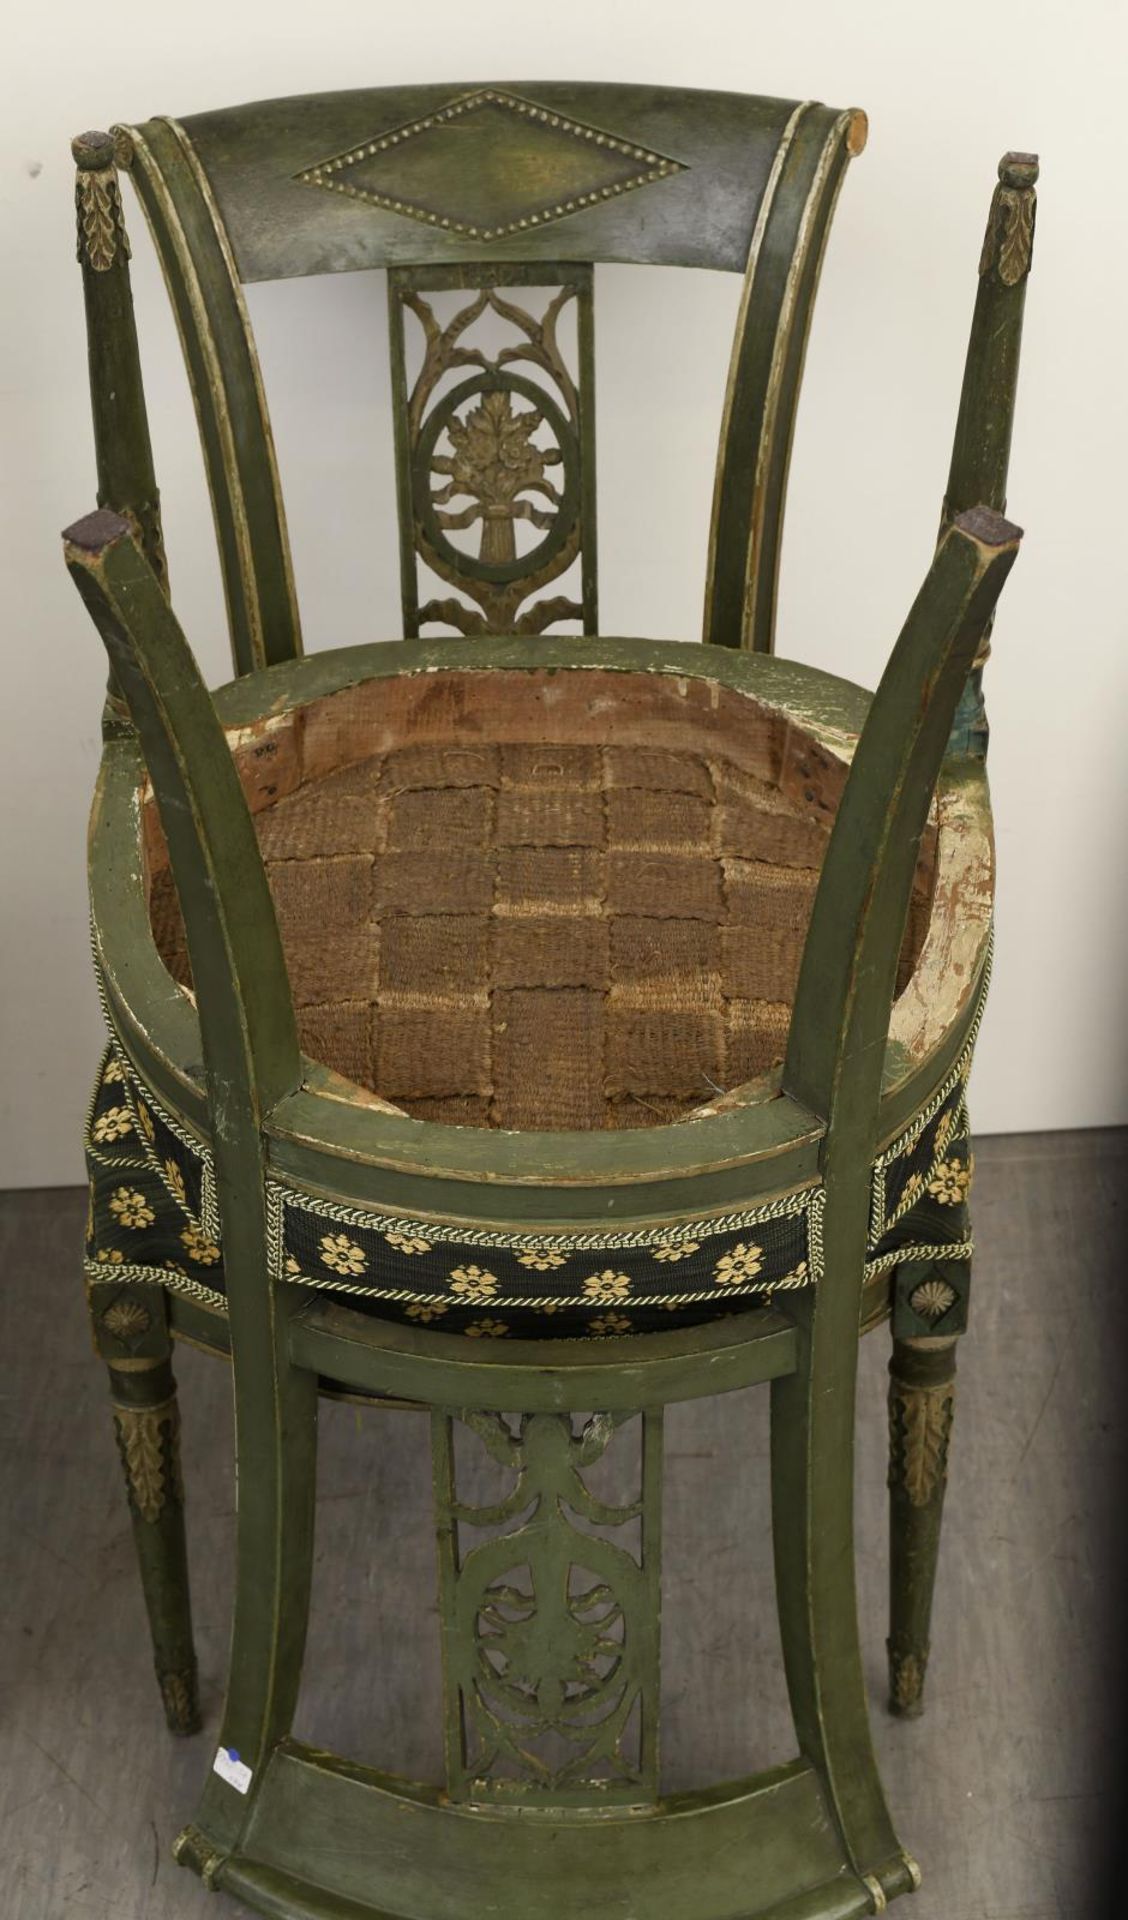 Sechs Stühle. 19. Jh. | Holz, grün und weiß gefasst. - Image 2 of 2